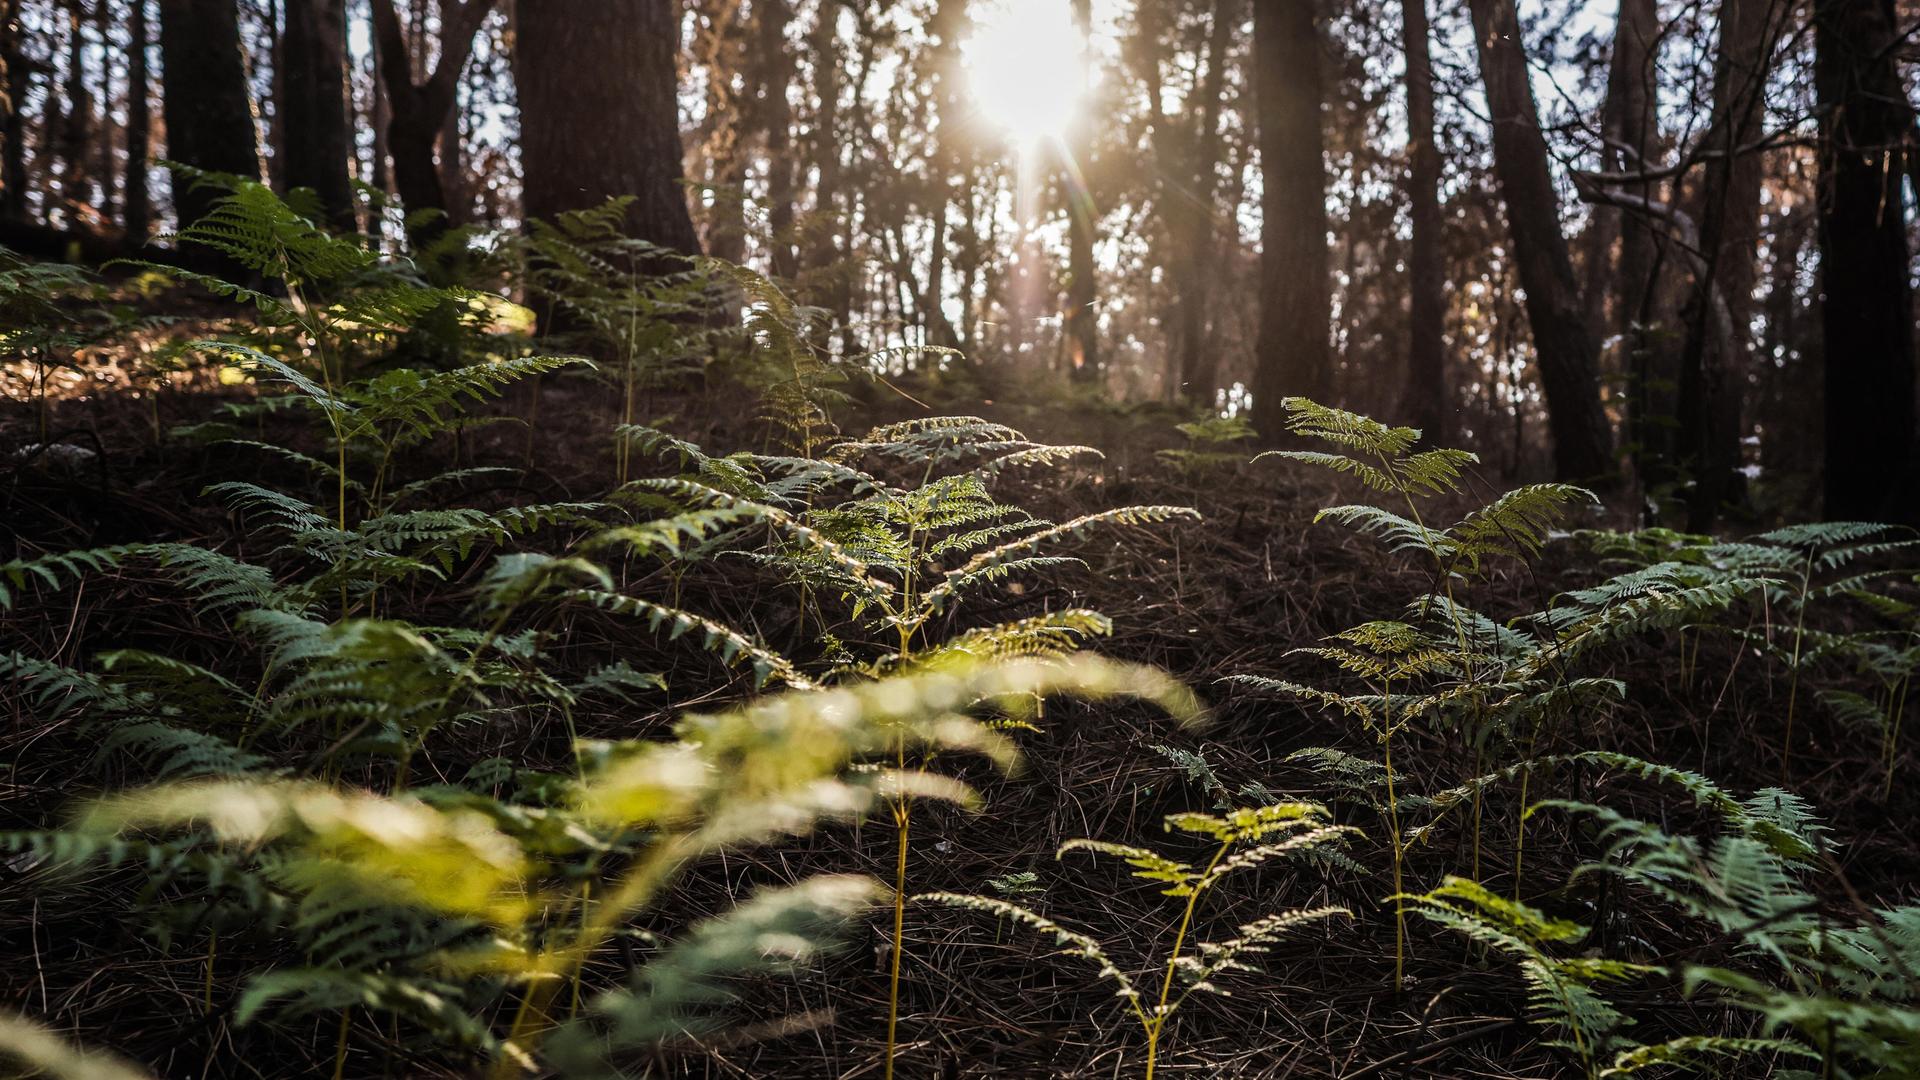 Ein nach einem Brand regenerierter Wald im Sonnenlicht, am Boden wachsen Farne.